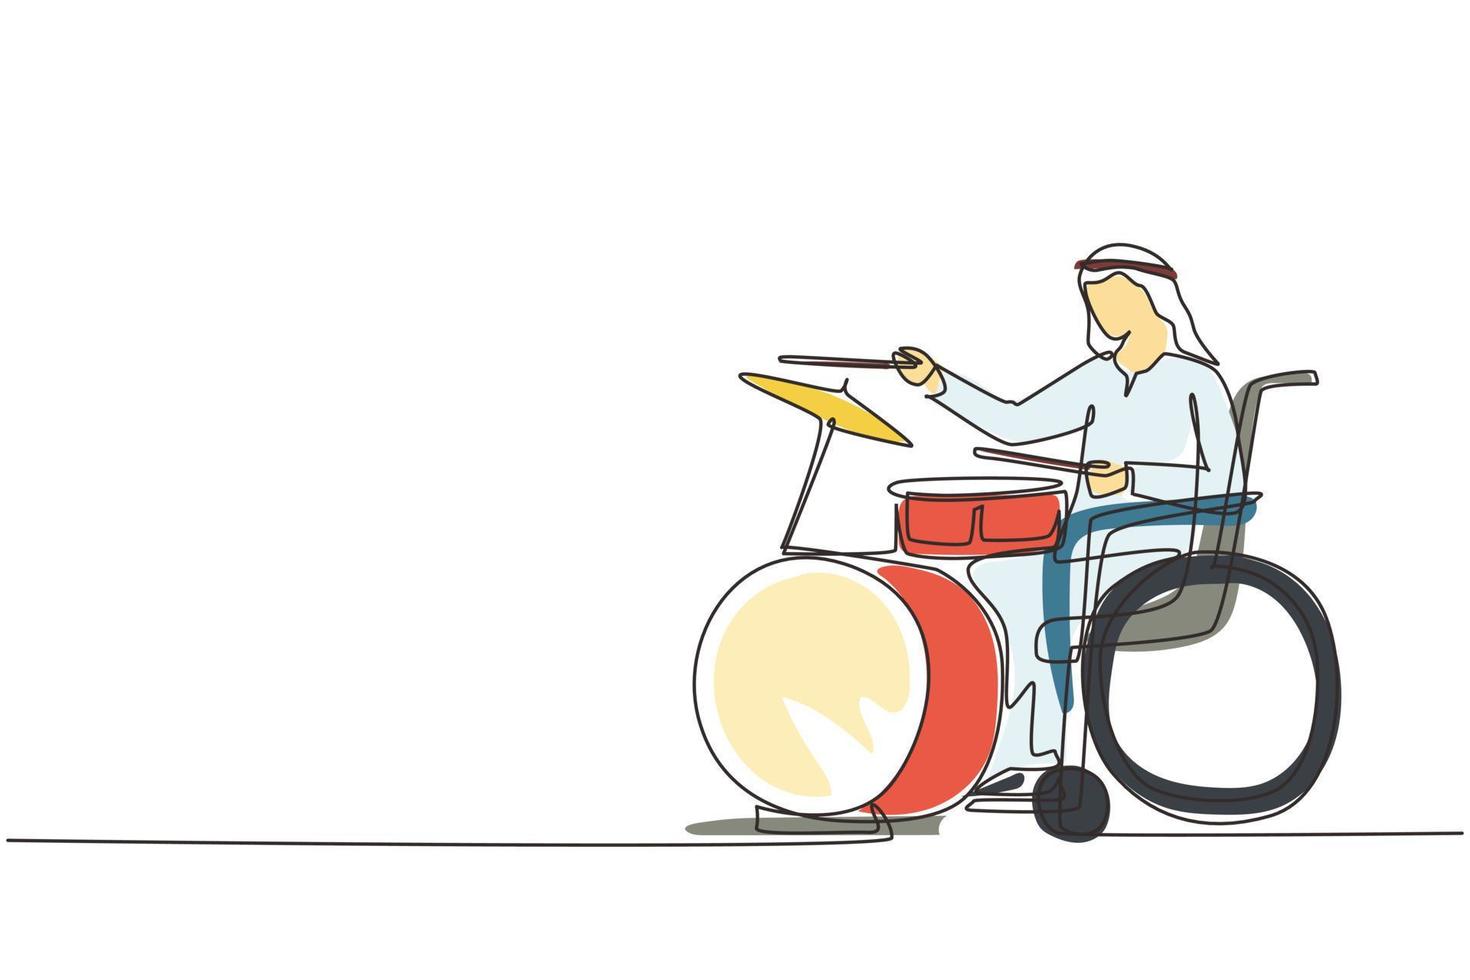 dibujo continuo de una línea hombre árabe discapacitado en silla de ruedas tocando tambor. Físicamente desarmado. persona en el hospital. paciente del centro de rehabilitación. ilustración gráfica de vector de diseño de dibujo de una sola línea